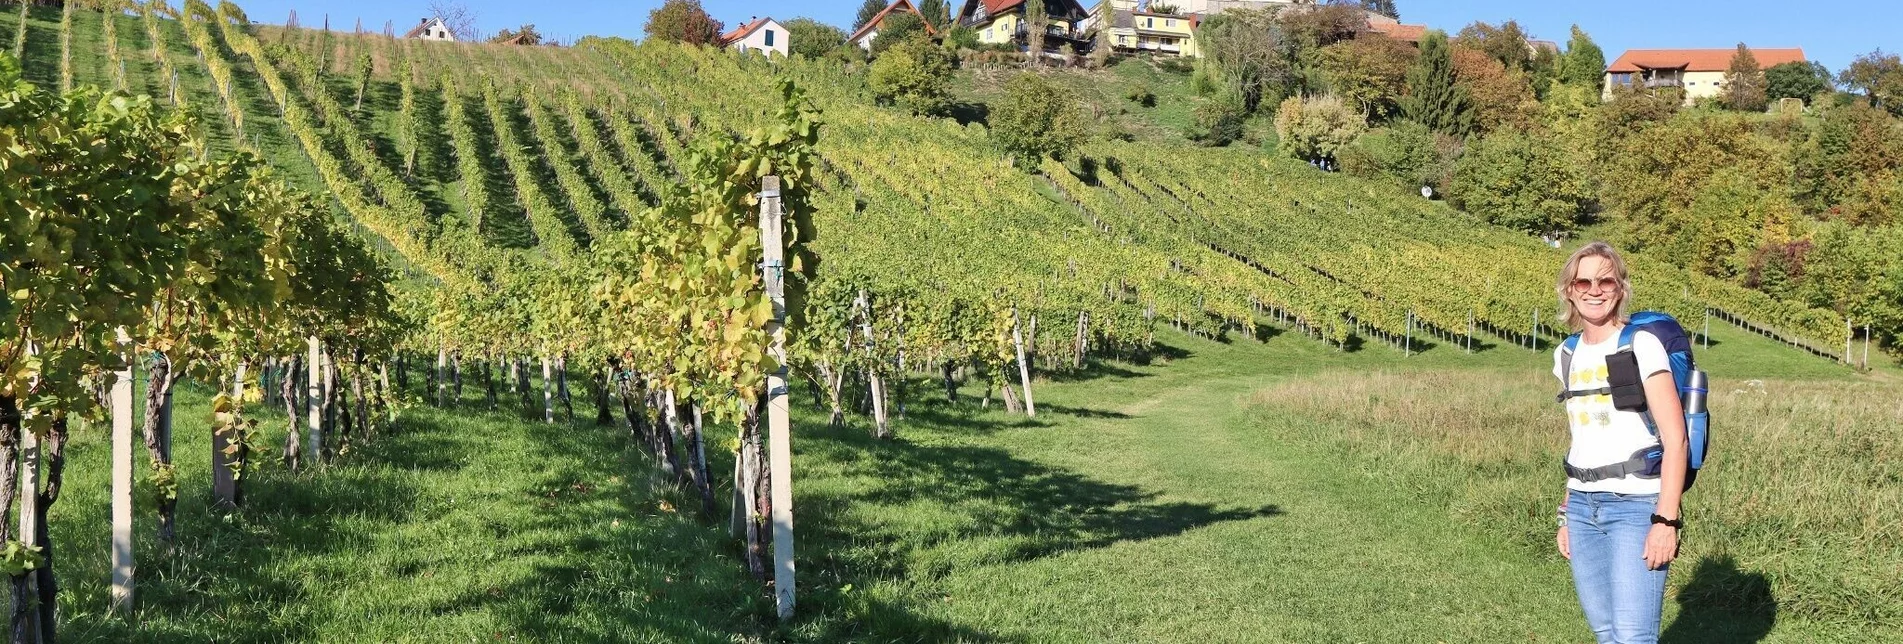 Hiking route Wine trail of the senses (Weinweg der Sinne) in St. Anna - Touren-Impression #1 | © Weges OG